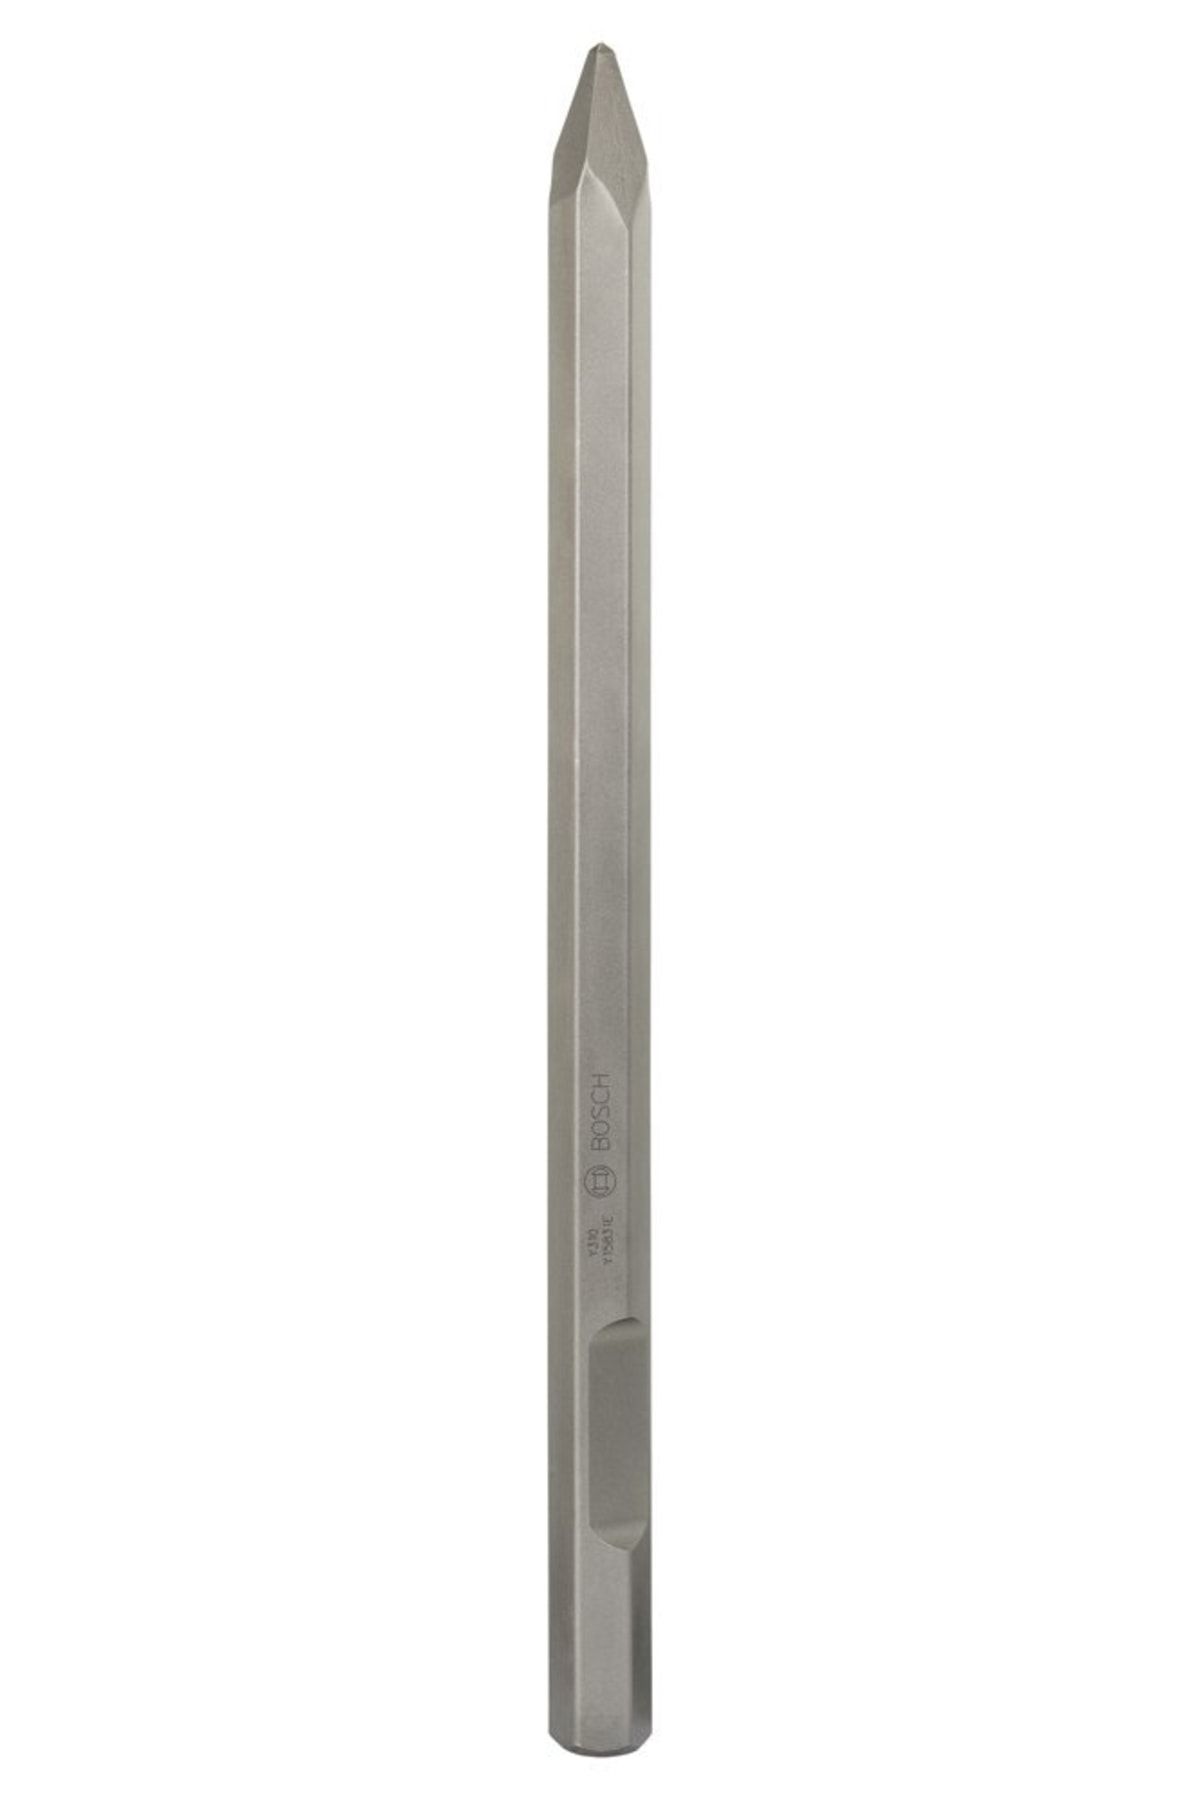 Bosch - Longlife Serisi, 28 Mm Altıgen Giriş Şaftlı Sivri Keski 520 Mm